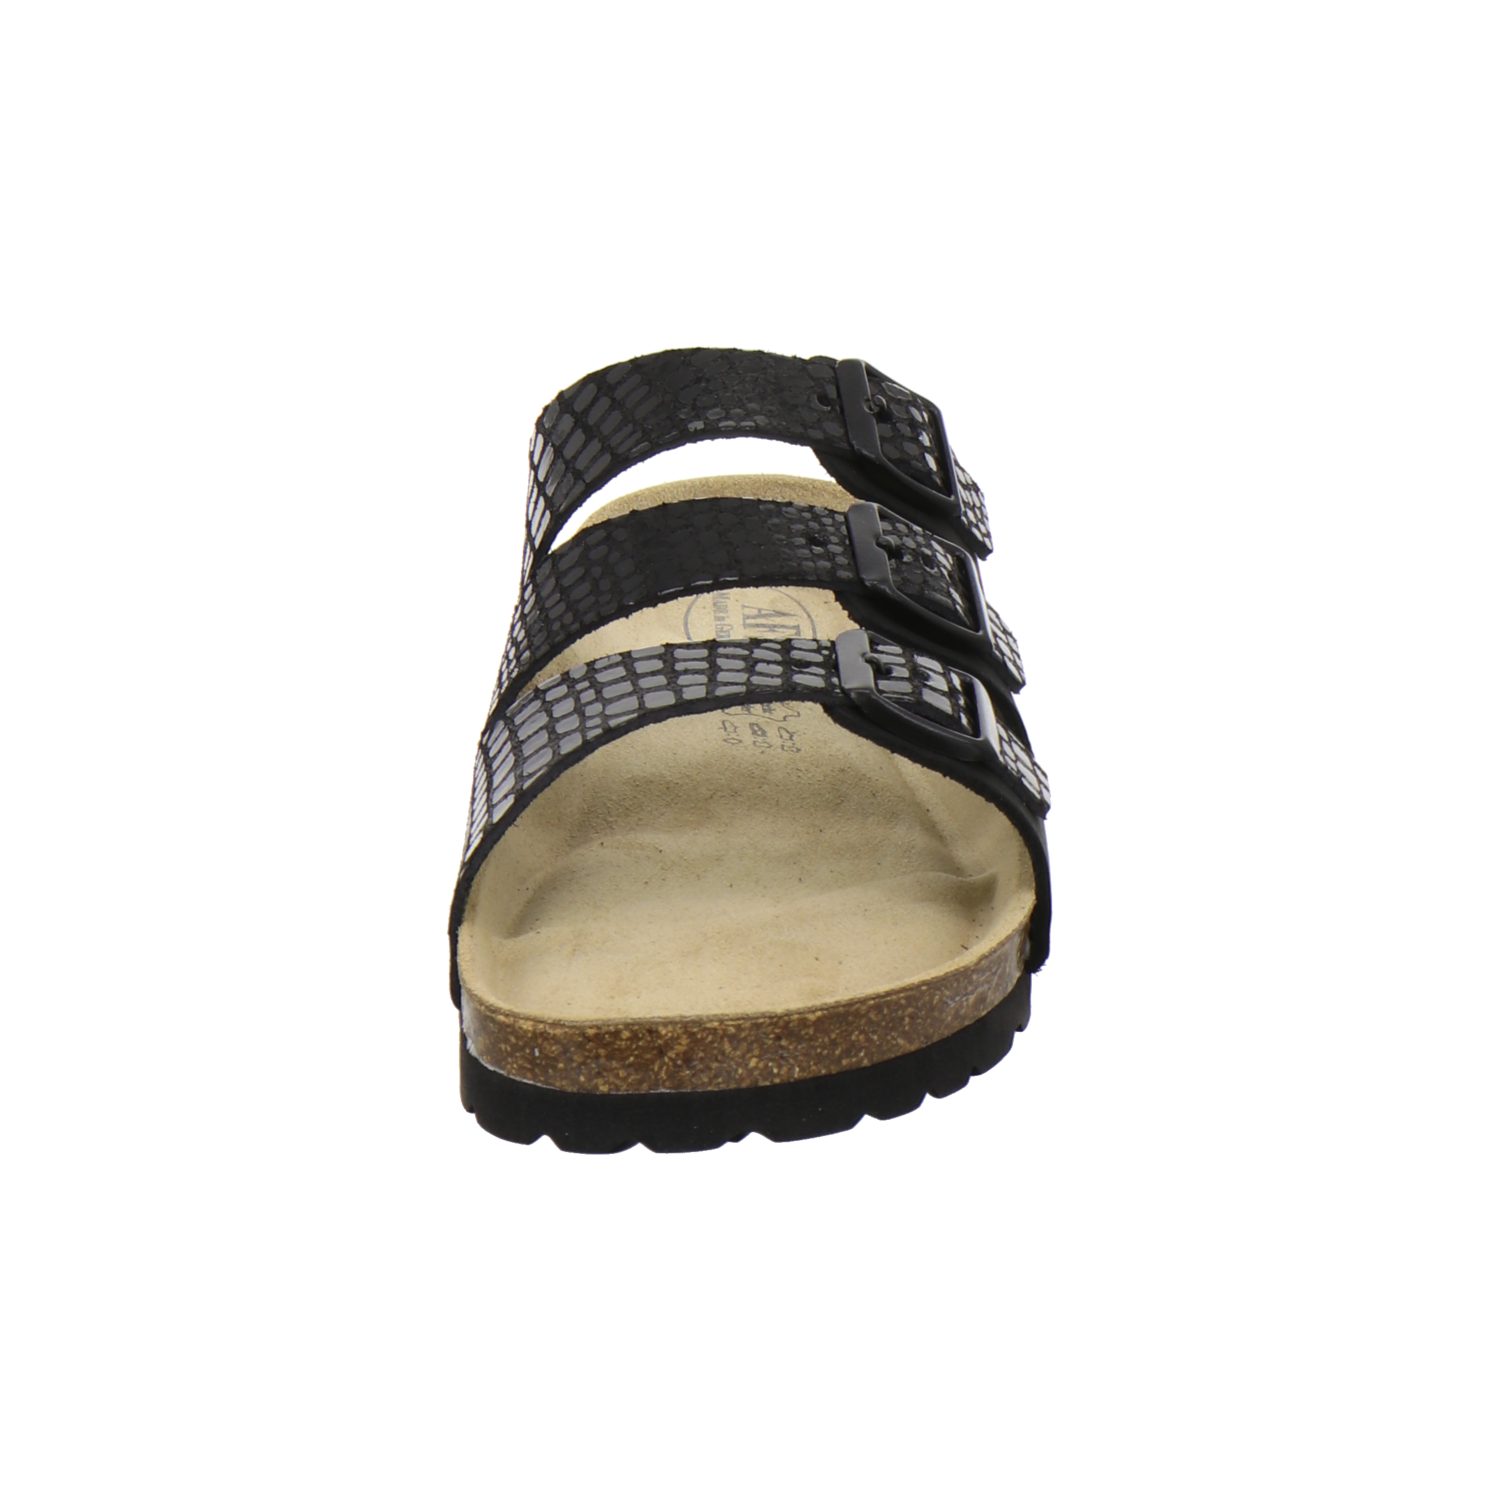 Damen Germany in Leder aus schwarz/crocco Fußbett, Pantolette Made mit AFS-Schuhe für 2133